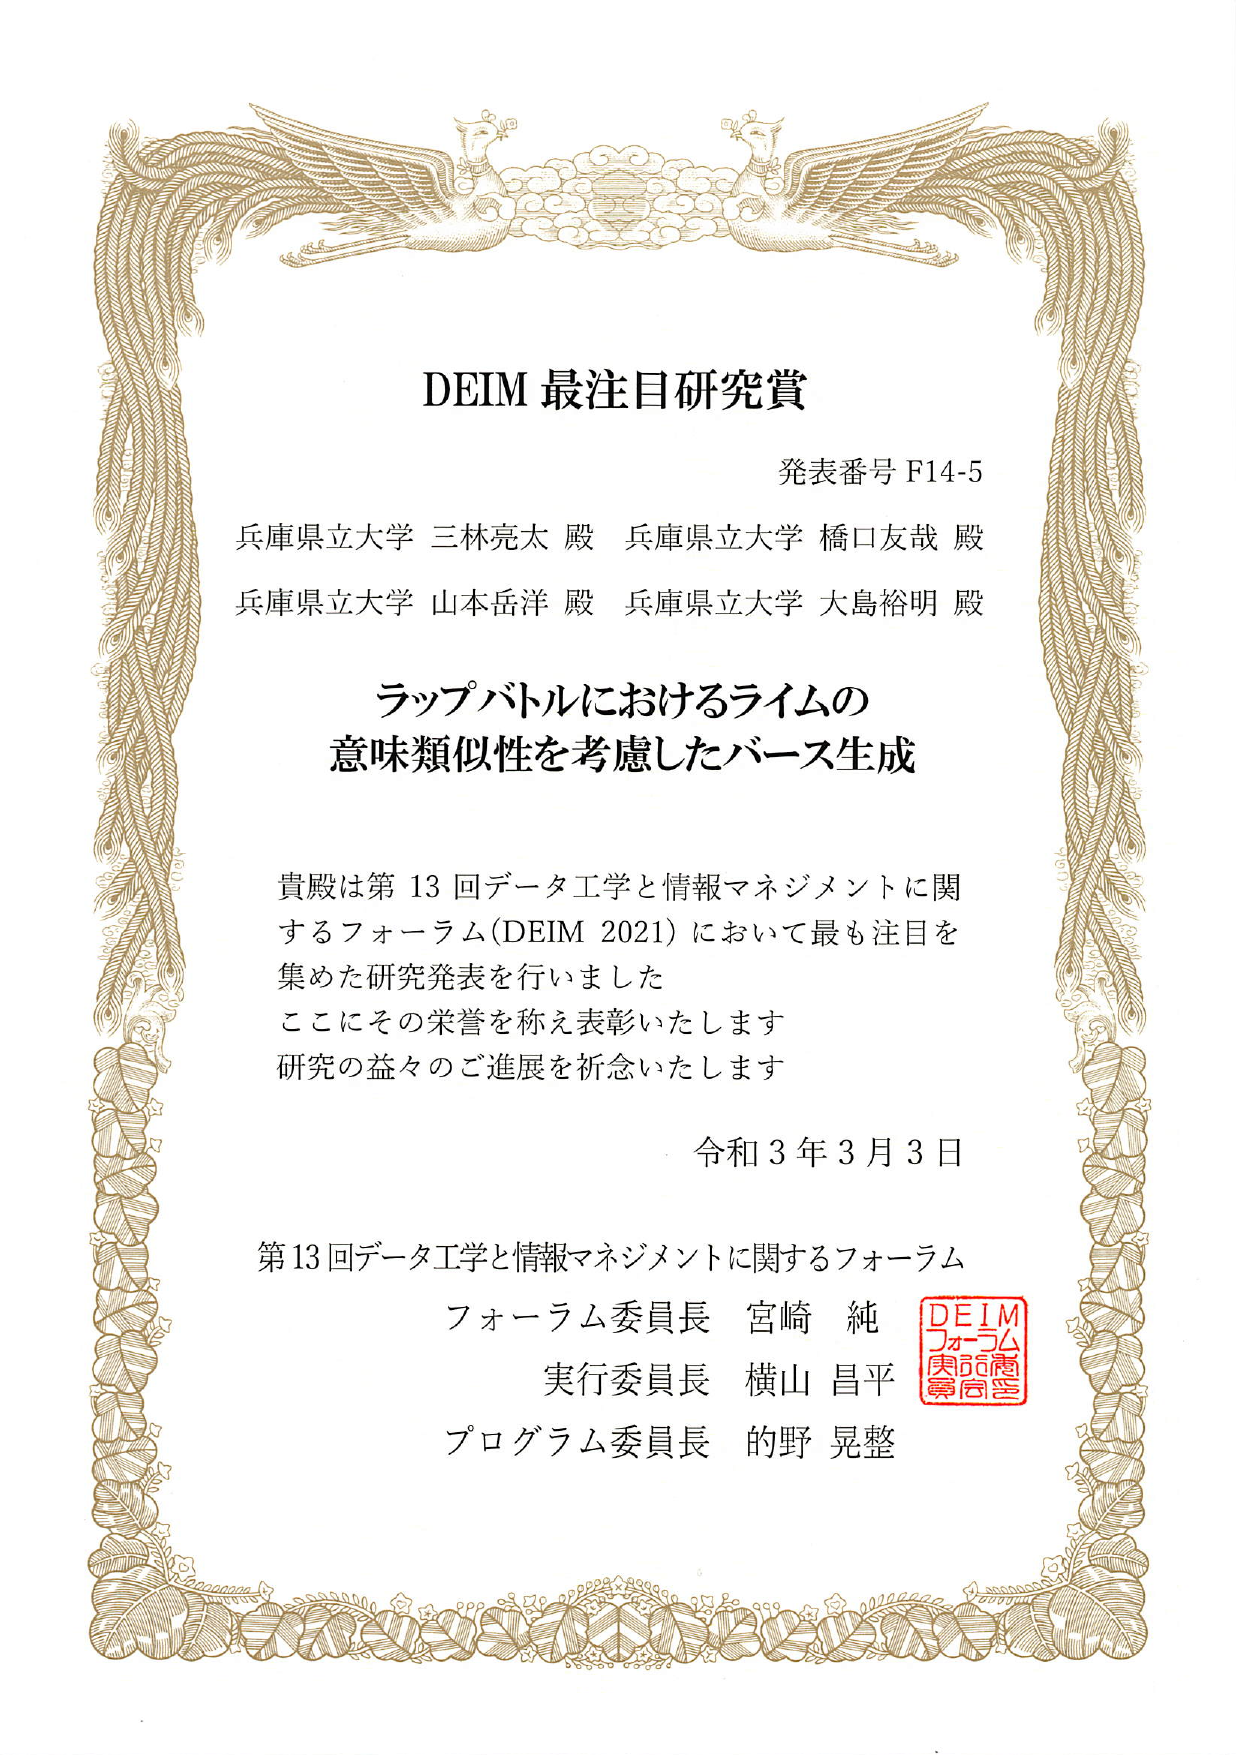 賞：DEIM2021 最注目研究賞